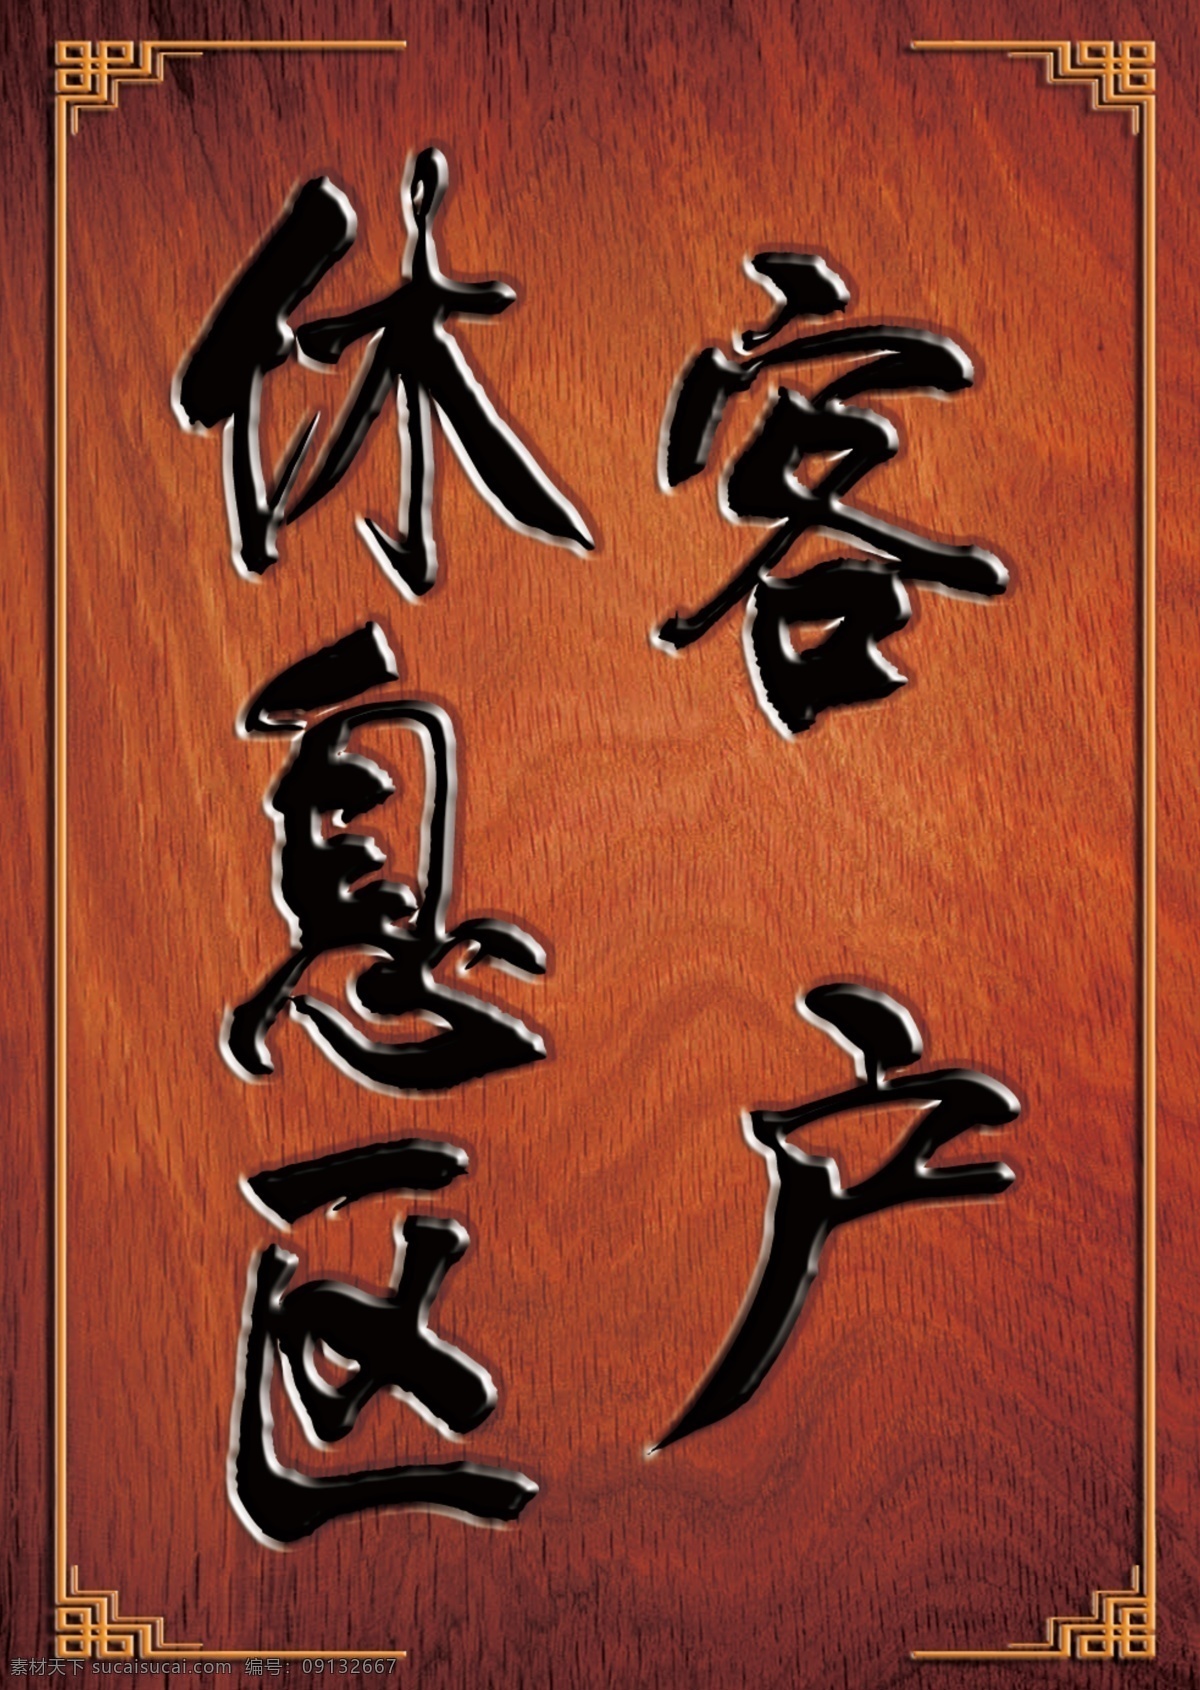 客户休息区 木纹 木牌 边框 木头牌 花纹 古代 古风 中国风